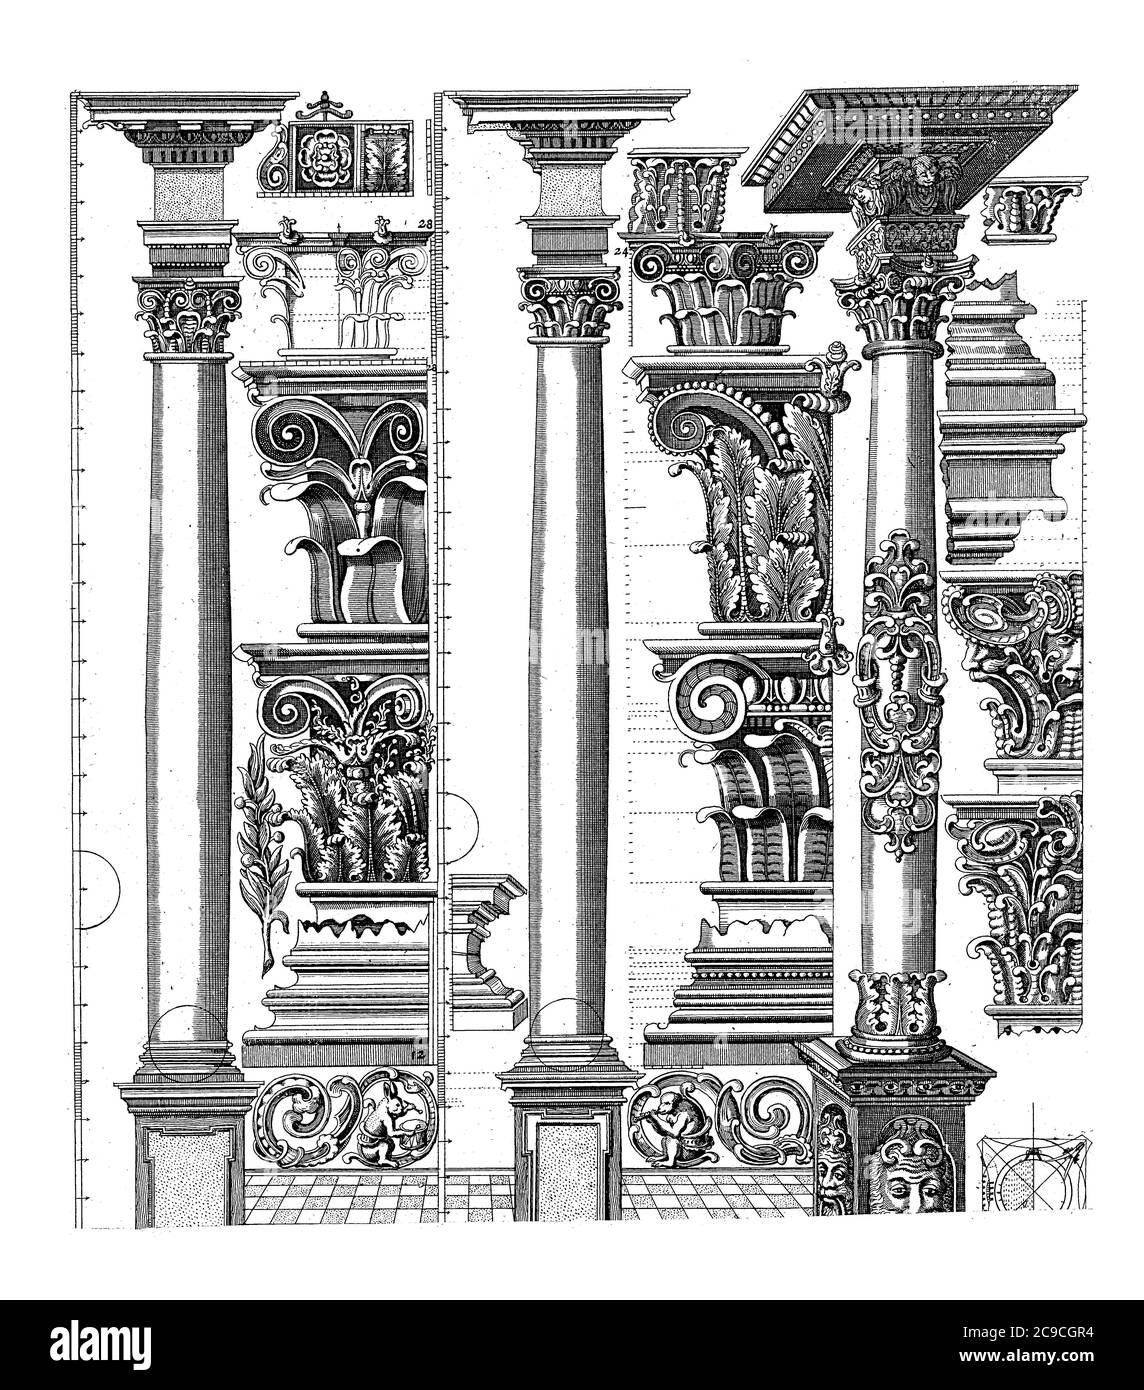 Säulen der korinthischen und zusammengesetzten Ordnung. Auf einem Fuß befinden sich drei Säulen. Rechts von jeder Spalte, Kapitelle und andere Ornamente sind stac Stockfoto